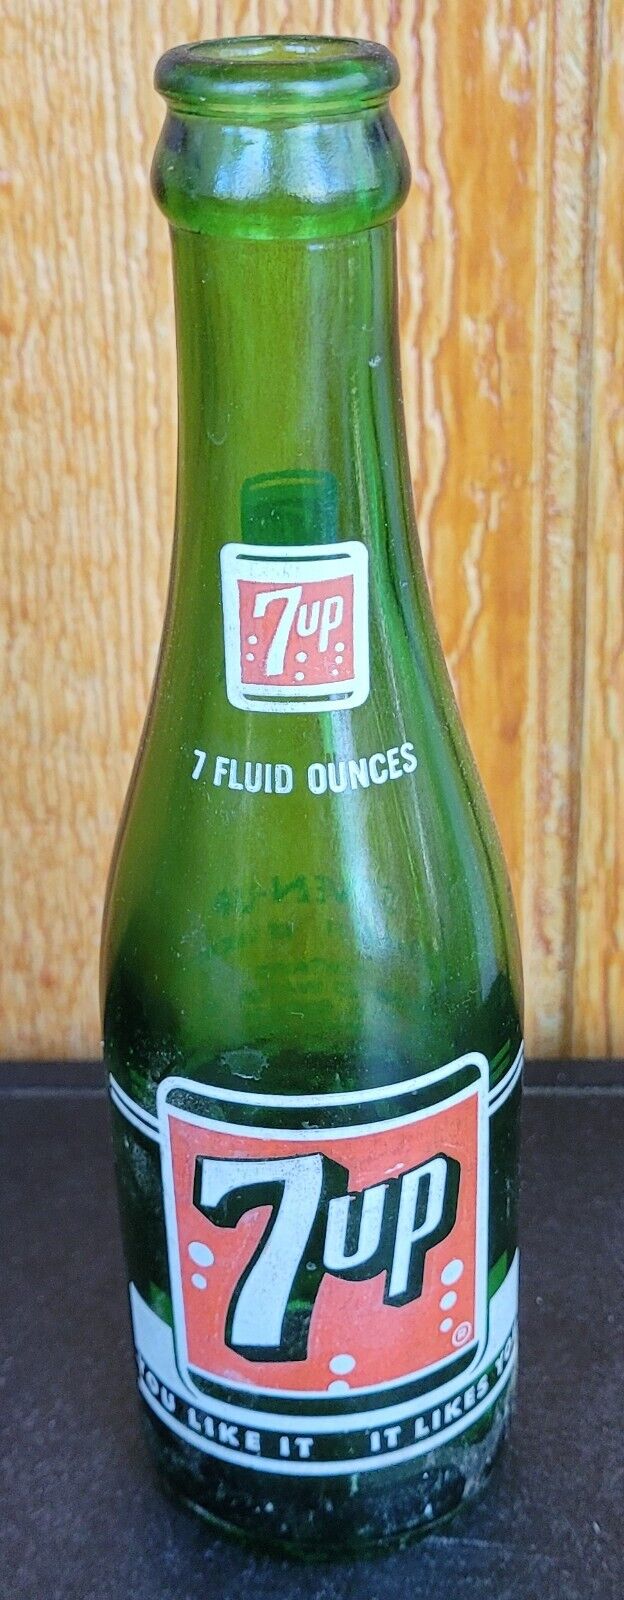 7up Bottle Vintage Green Glass Soda Pop Bottles